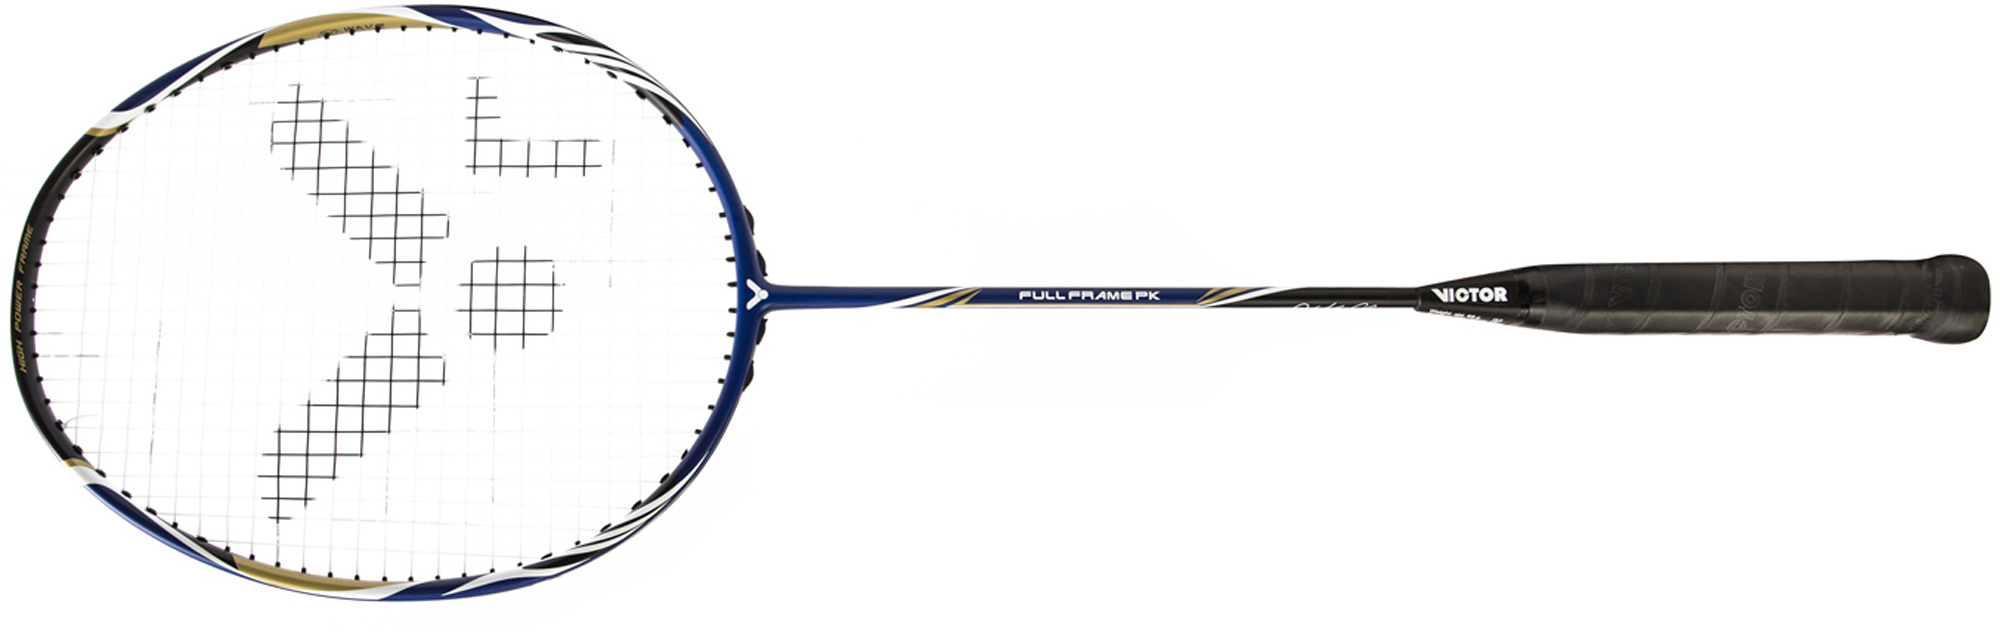 Badminton racquet